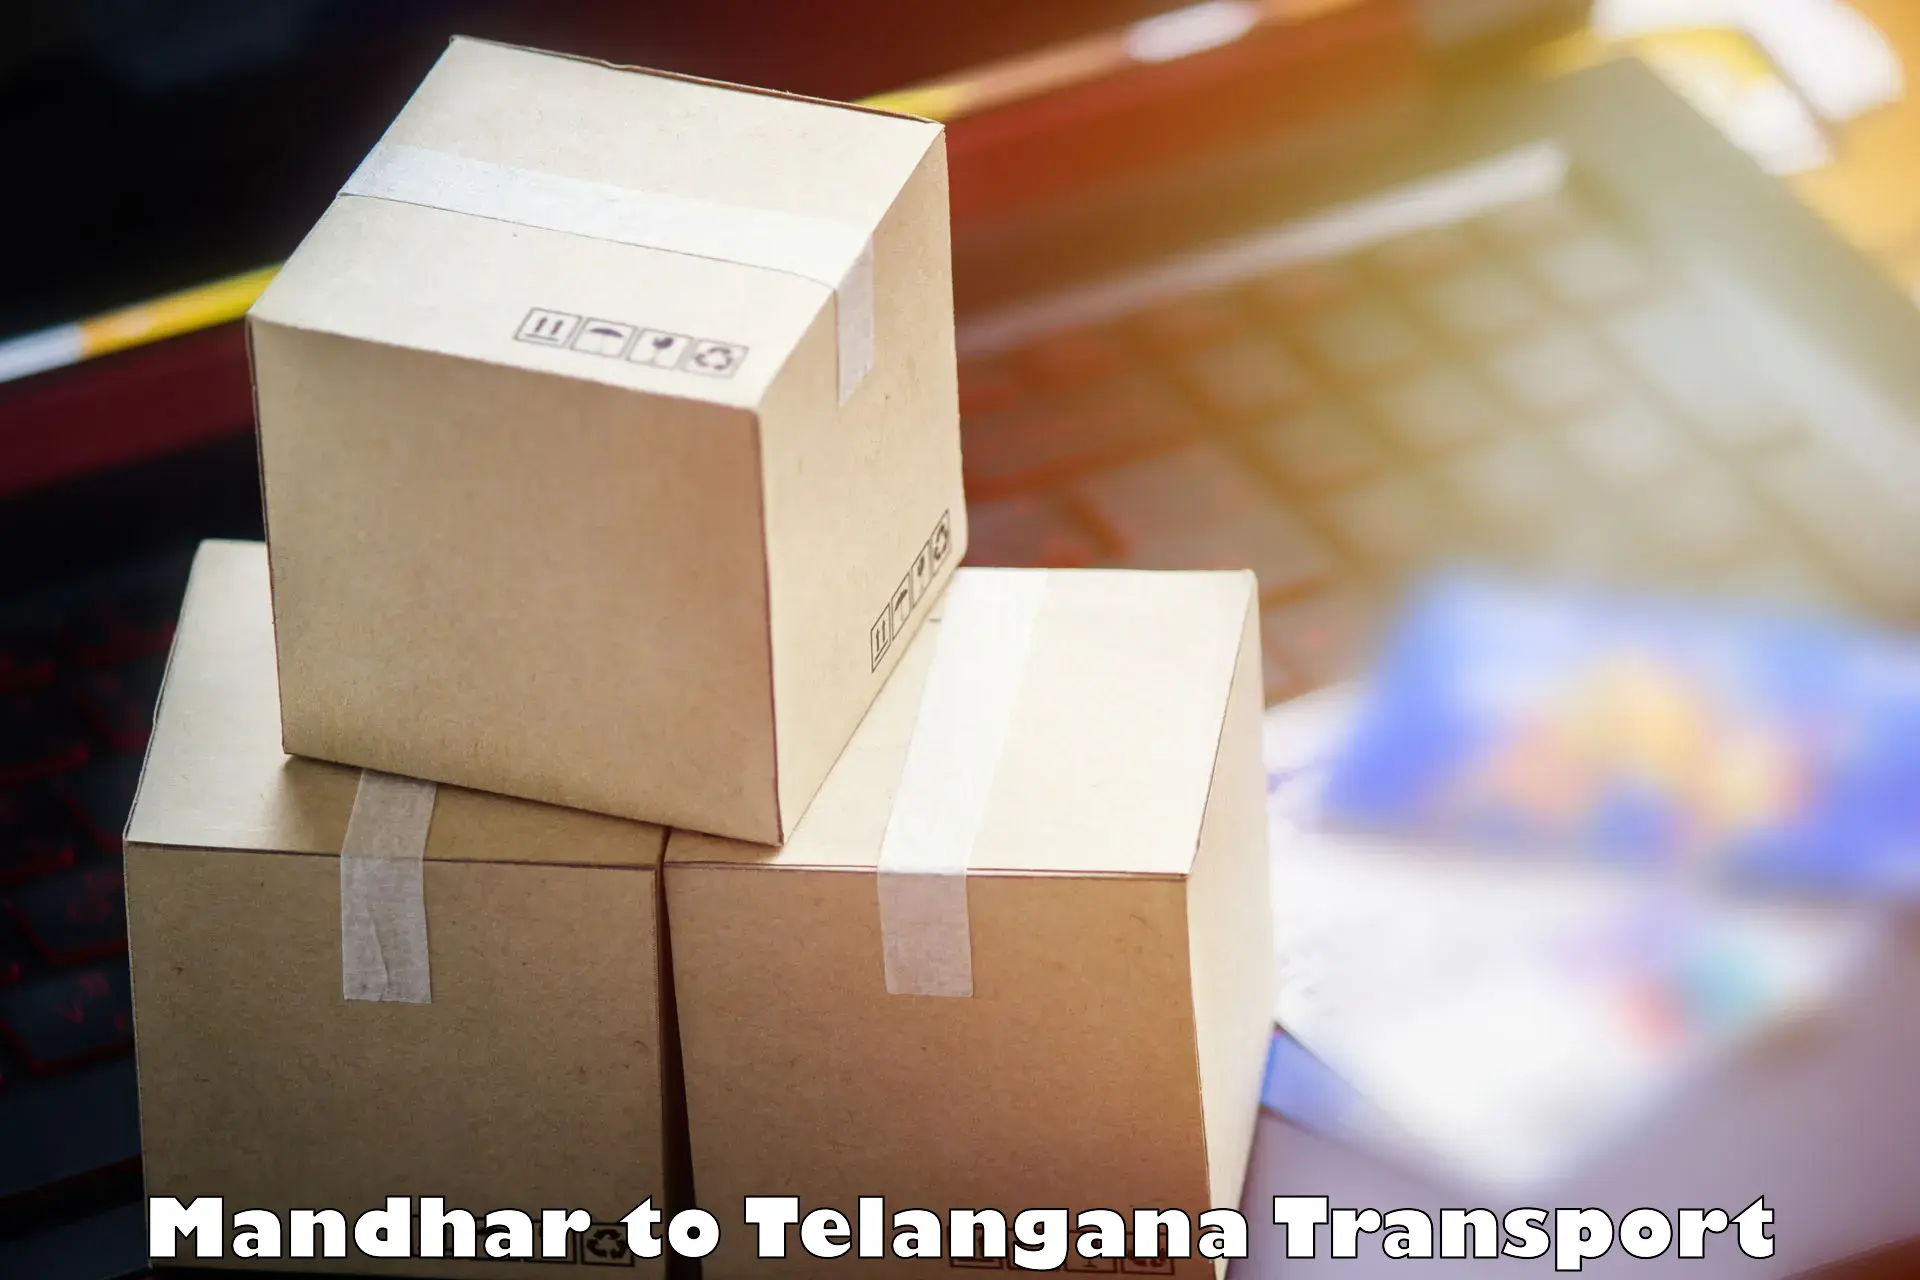 Land transport services in Mandhar to Medchal